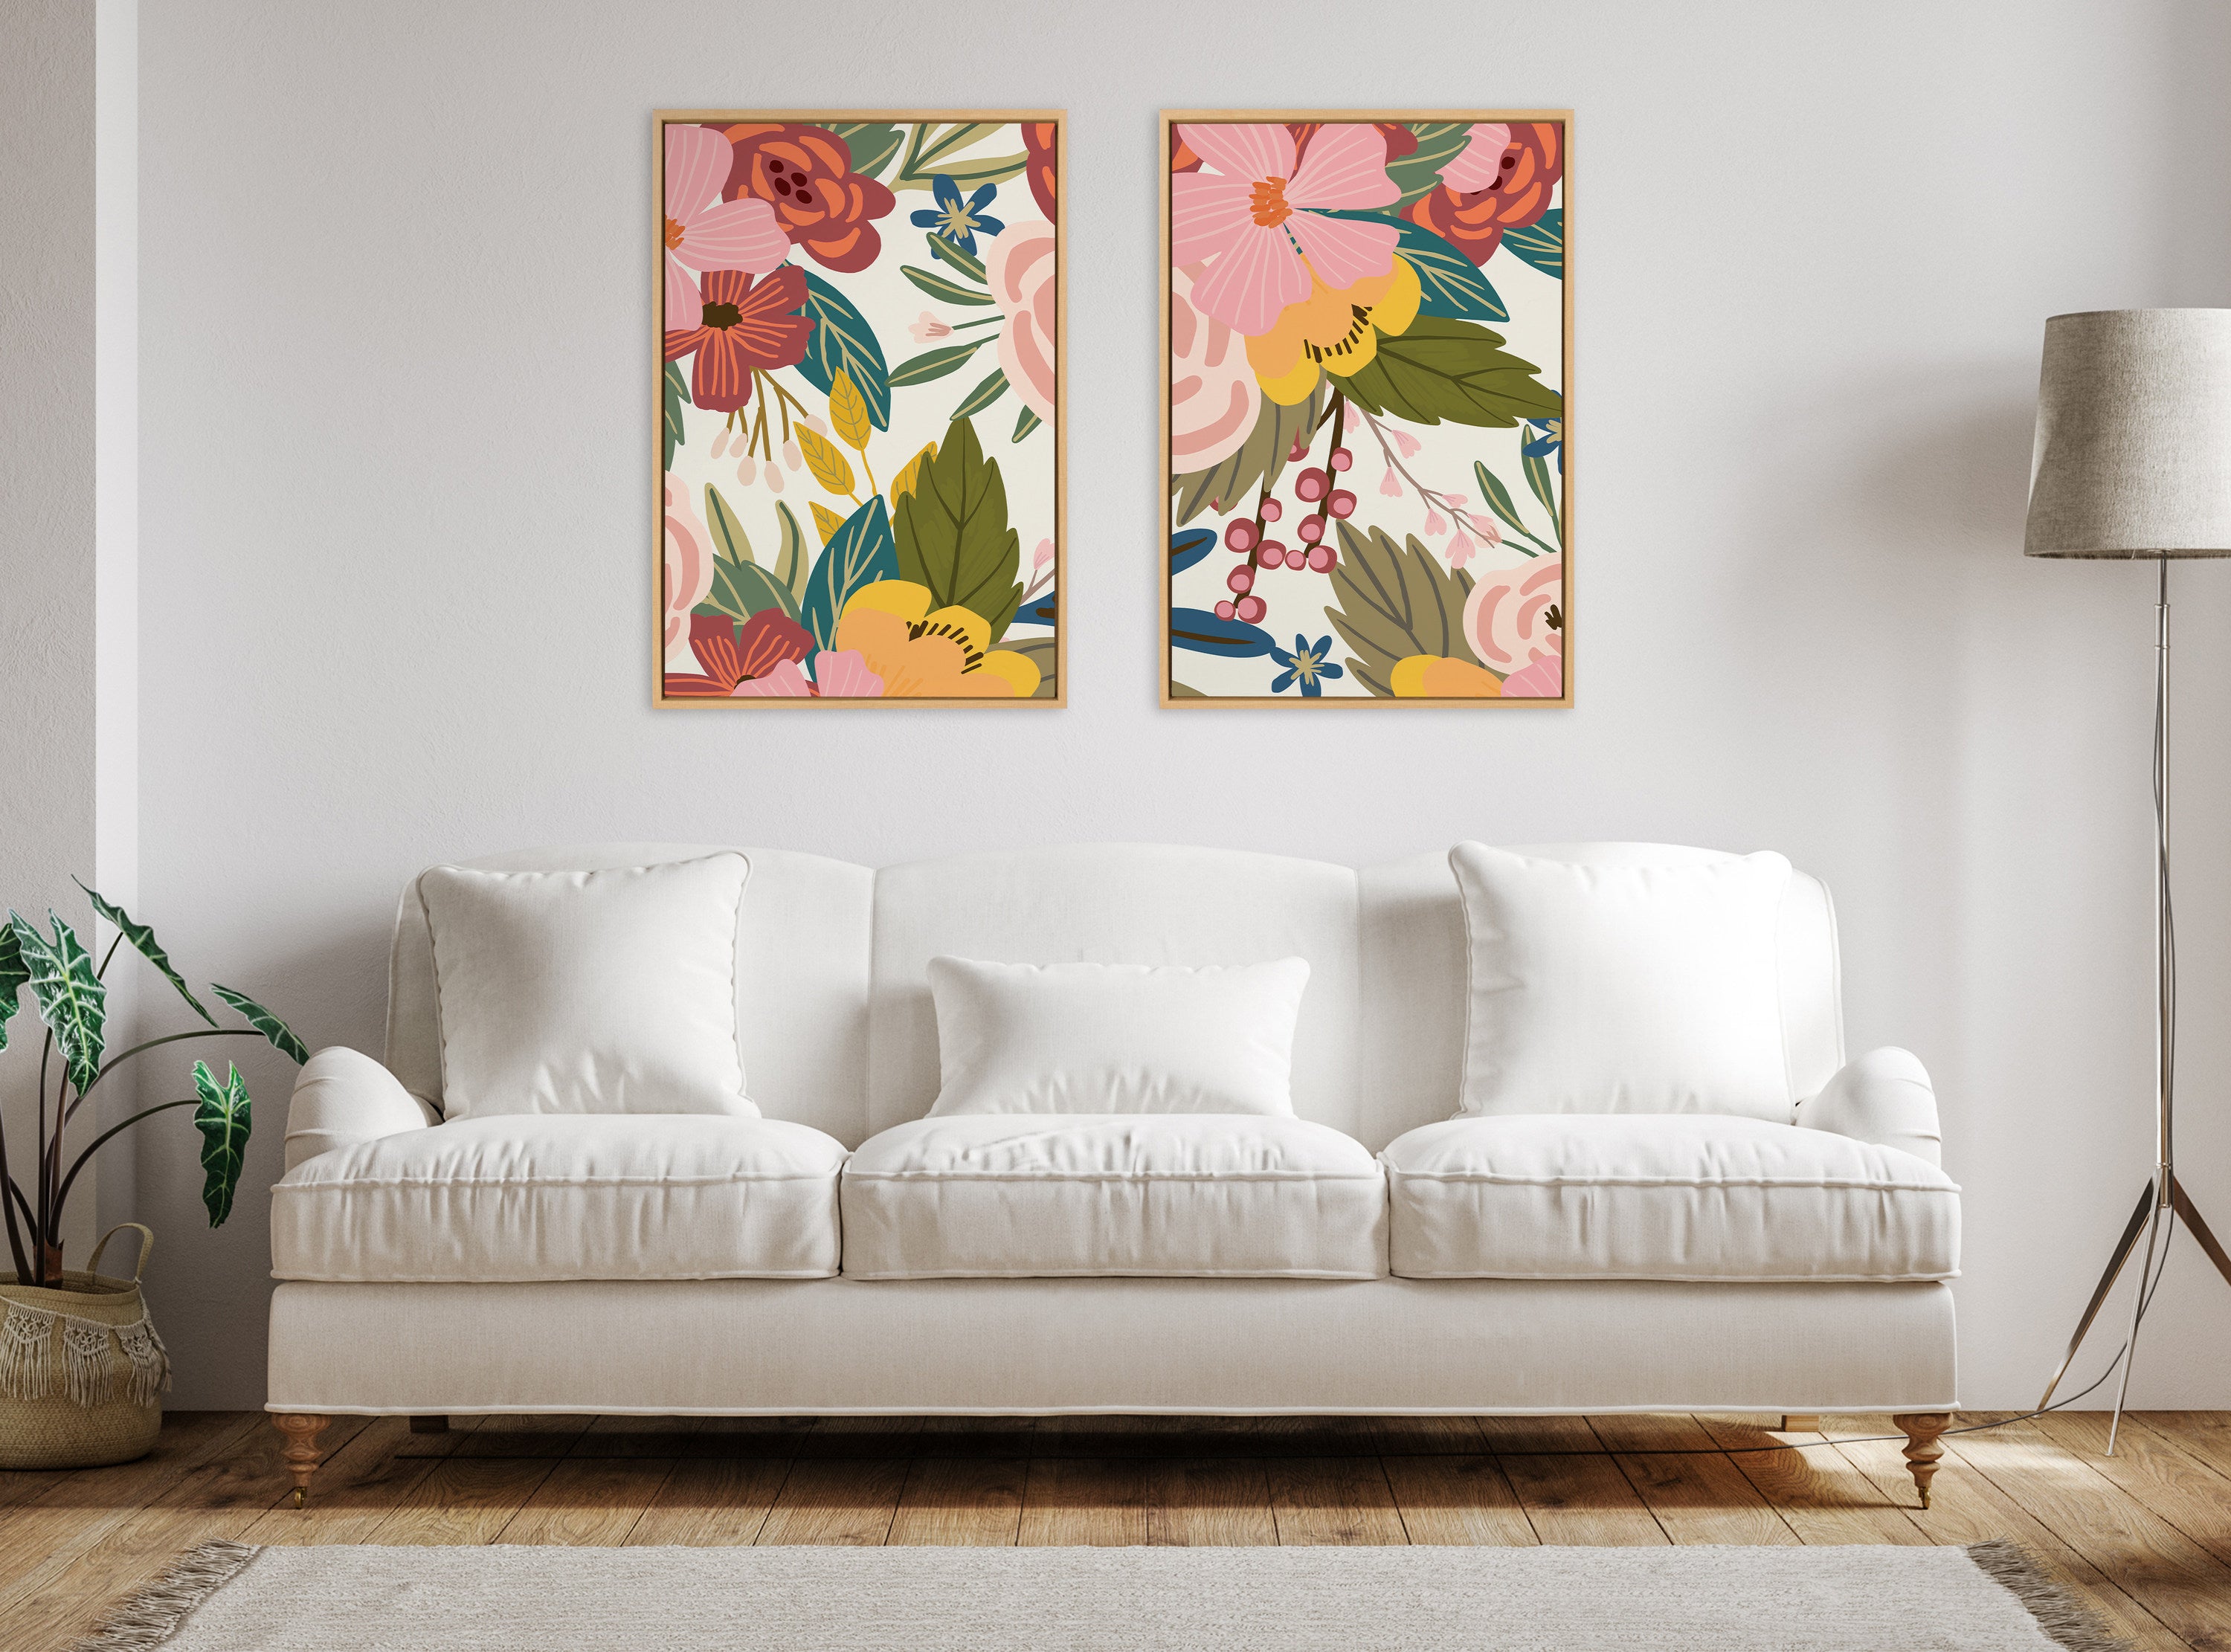 Sylvie Softly 1 and 2 Framed Canvas Art Set by Mia Charro